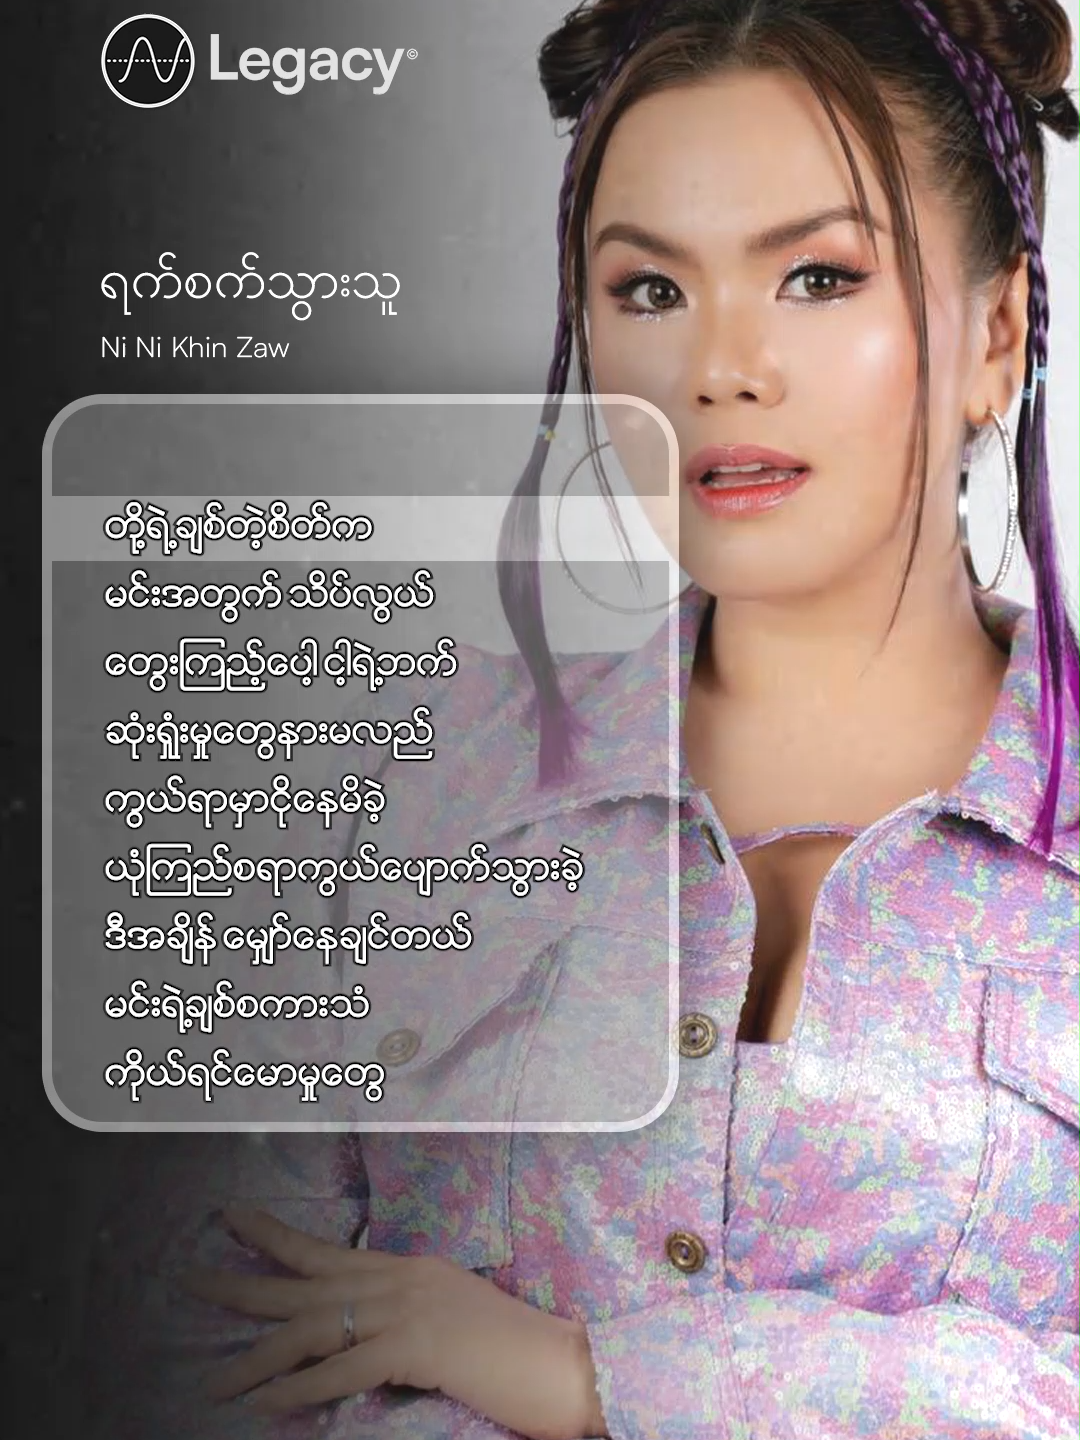 လွယ်လွယ်မဟုတ်ဘူးသိပ်ချစ်ဖူးတာပြန်စဉ်းစား💔ရက်စက်သွားသူ - Ni Ni Khin Zaw #NiNiKhinZaw#LegacyMusic #YouTube #Fyp #ForYou #fyp #Myanmar #Trending